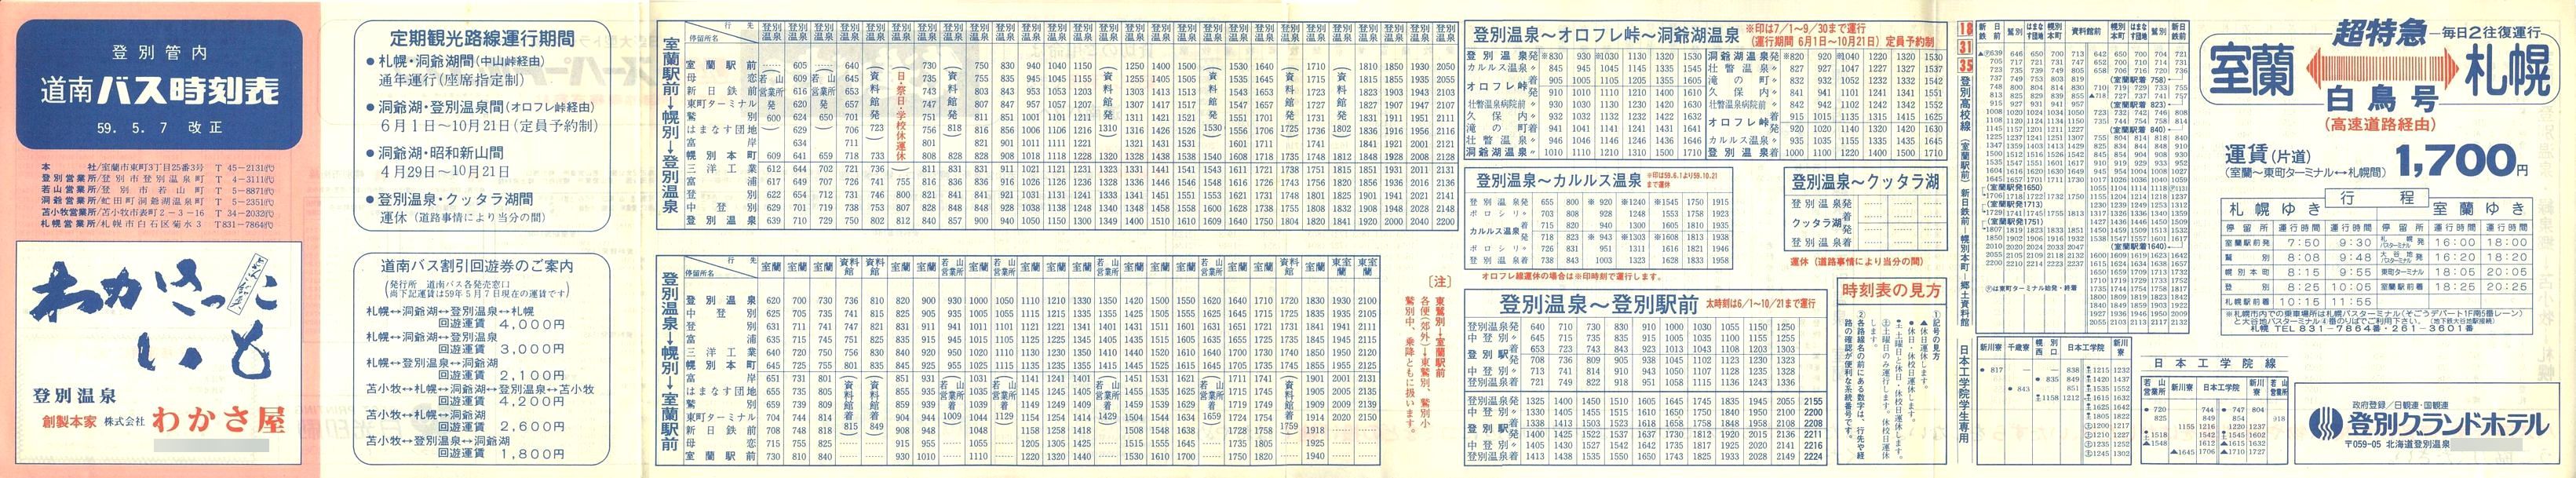 1984-05-07改正_道南バス_登別管内時刻表表面